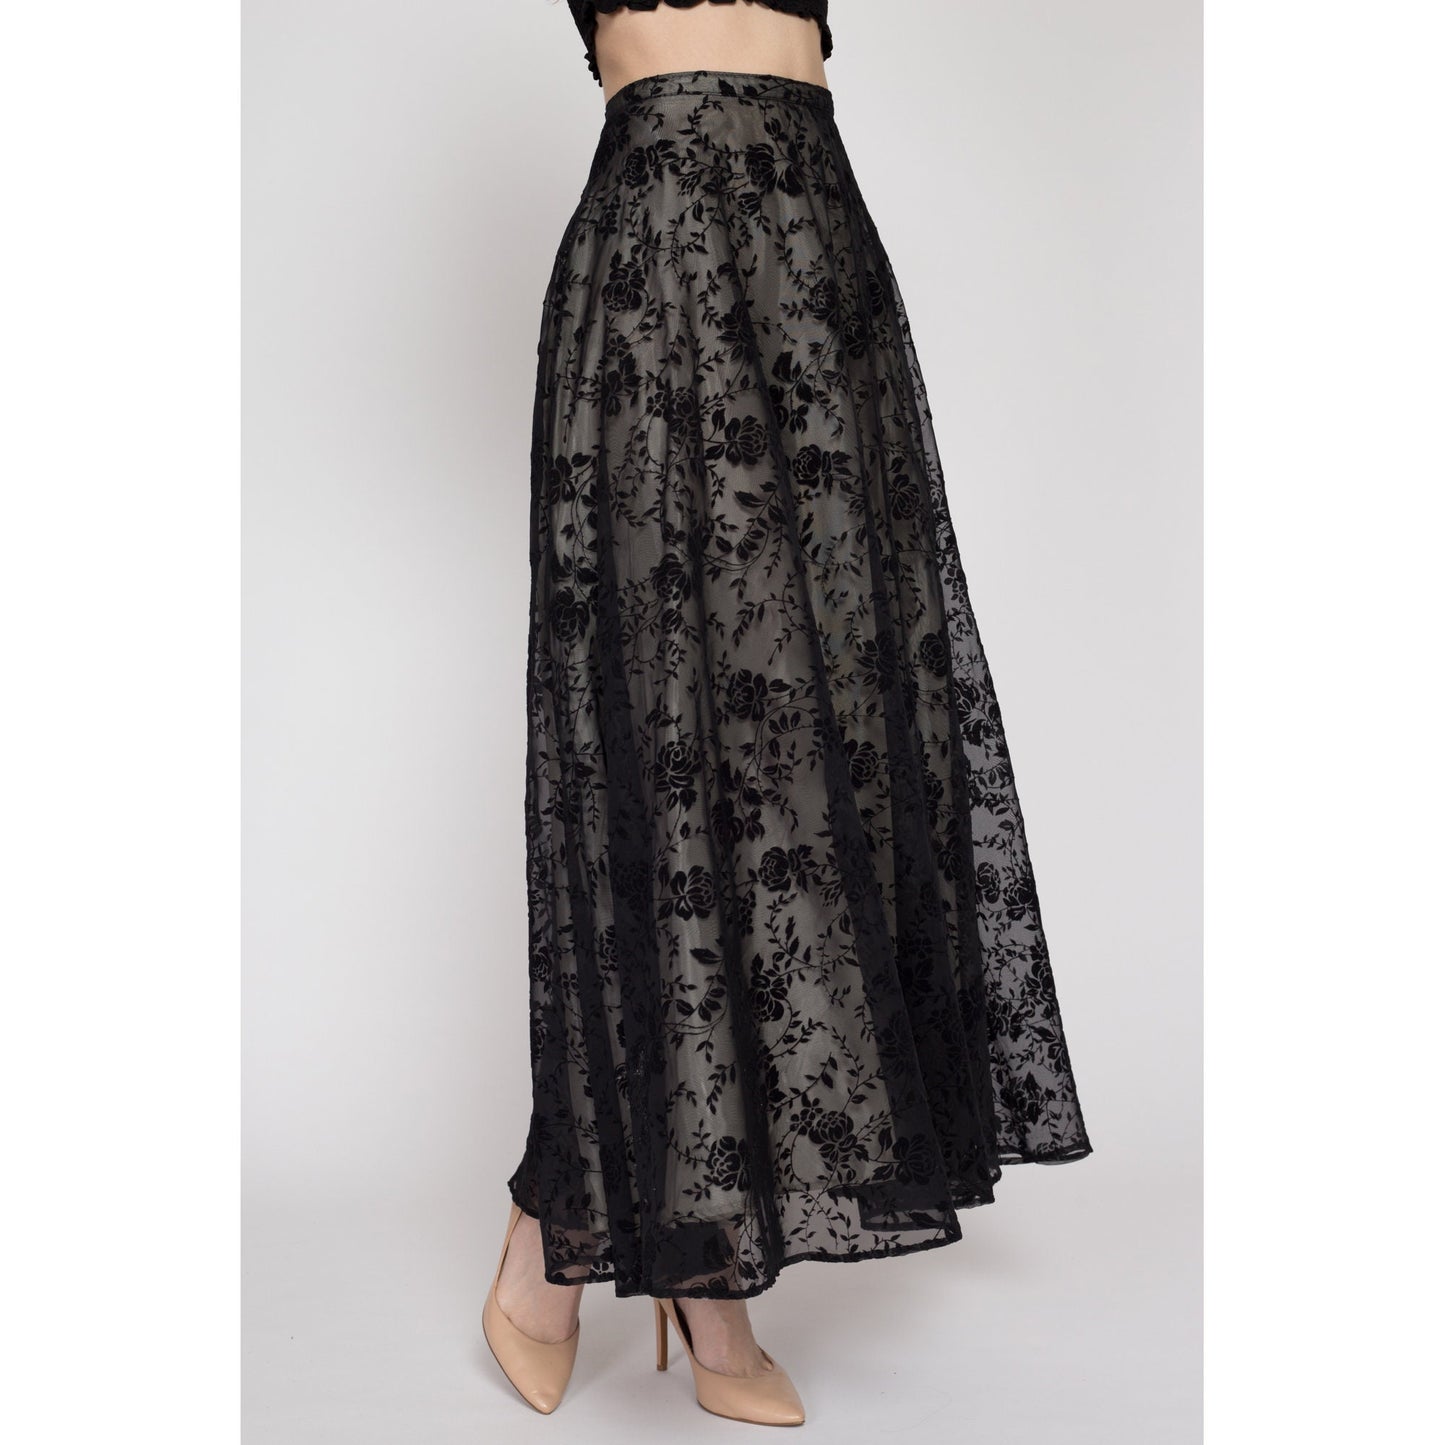 XS 90s Formal Black Flocked Taffeta Maxi Skirt | Vintage Velvet Damask Floor Length High Waisted Flowy Full Skirt